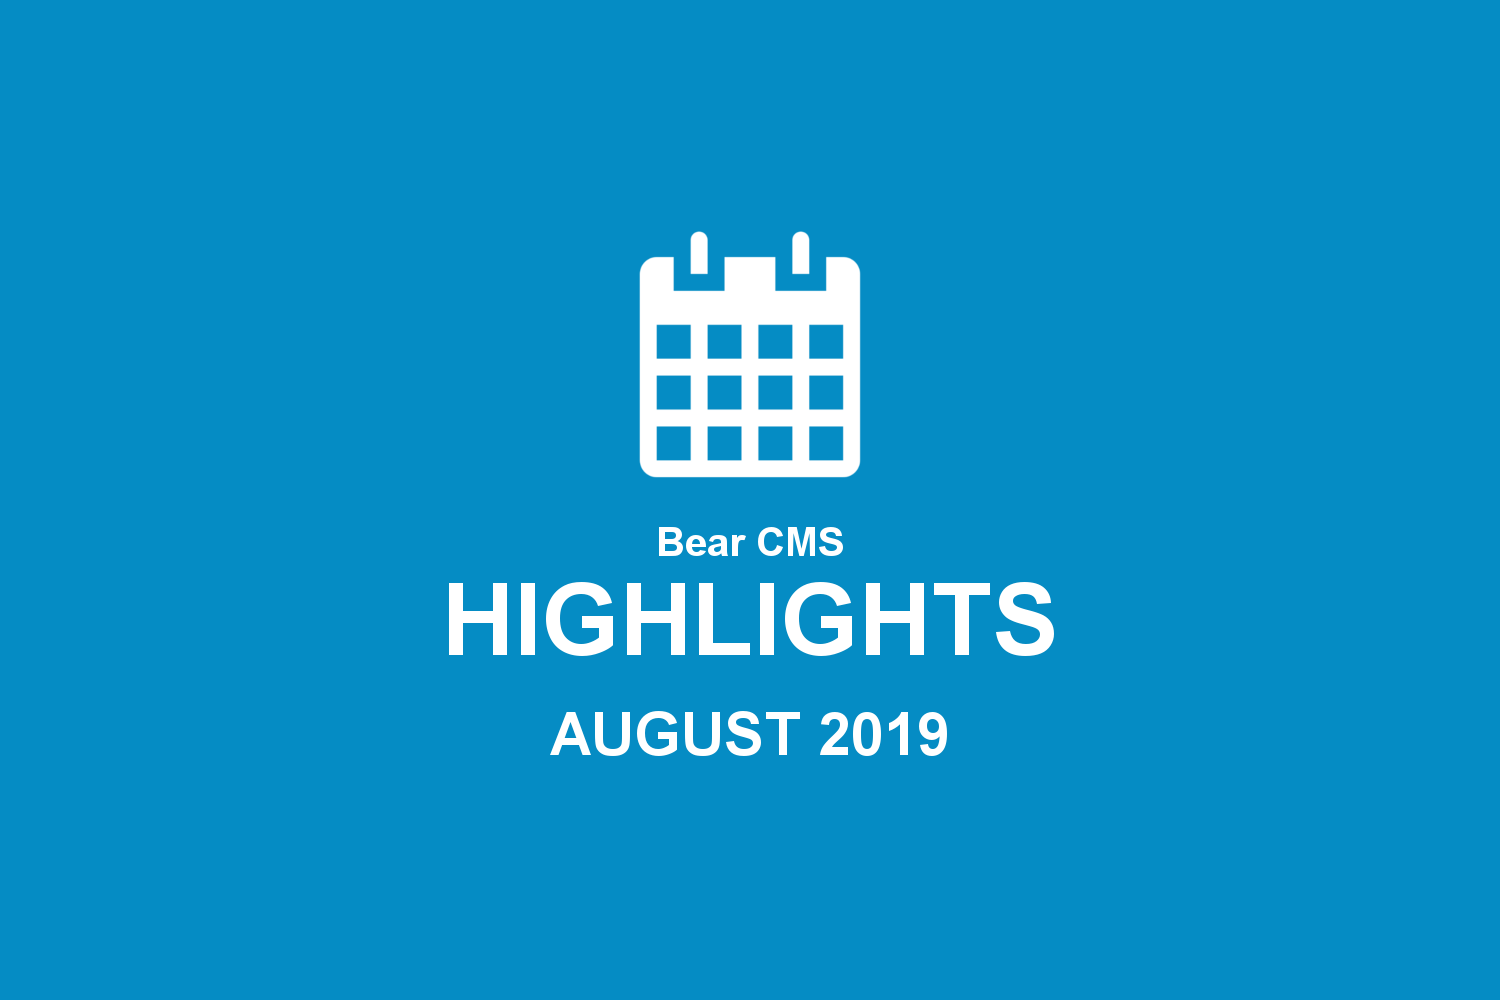 Bear CMS highlights (August 2019)